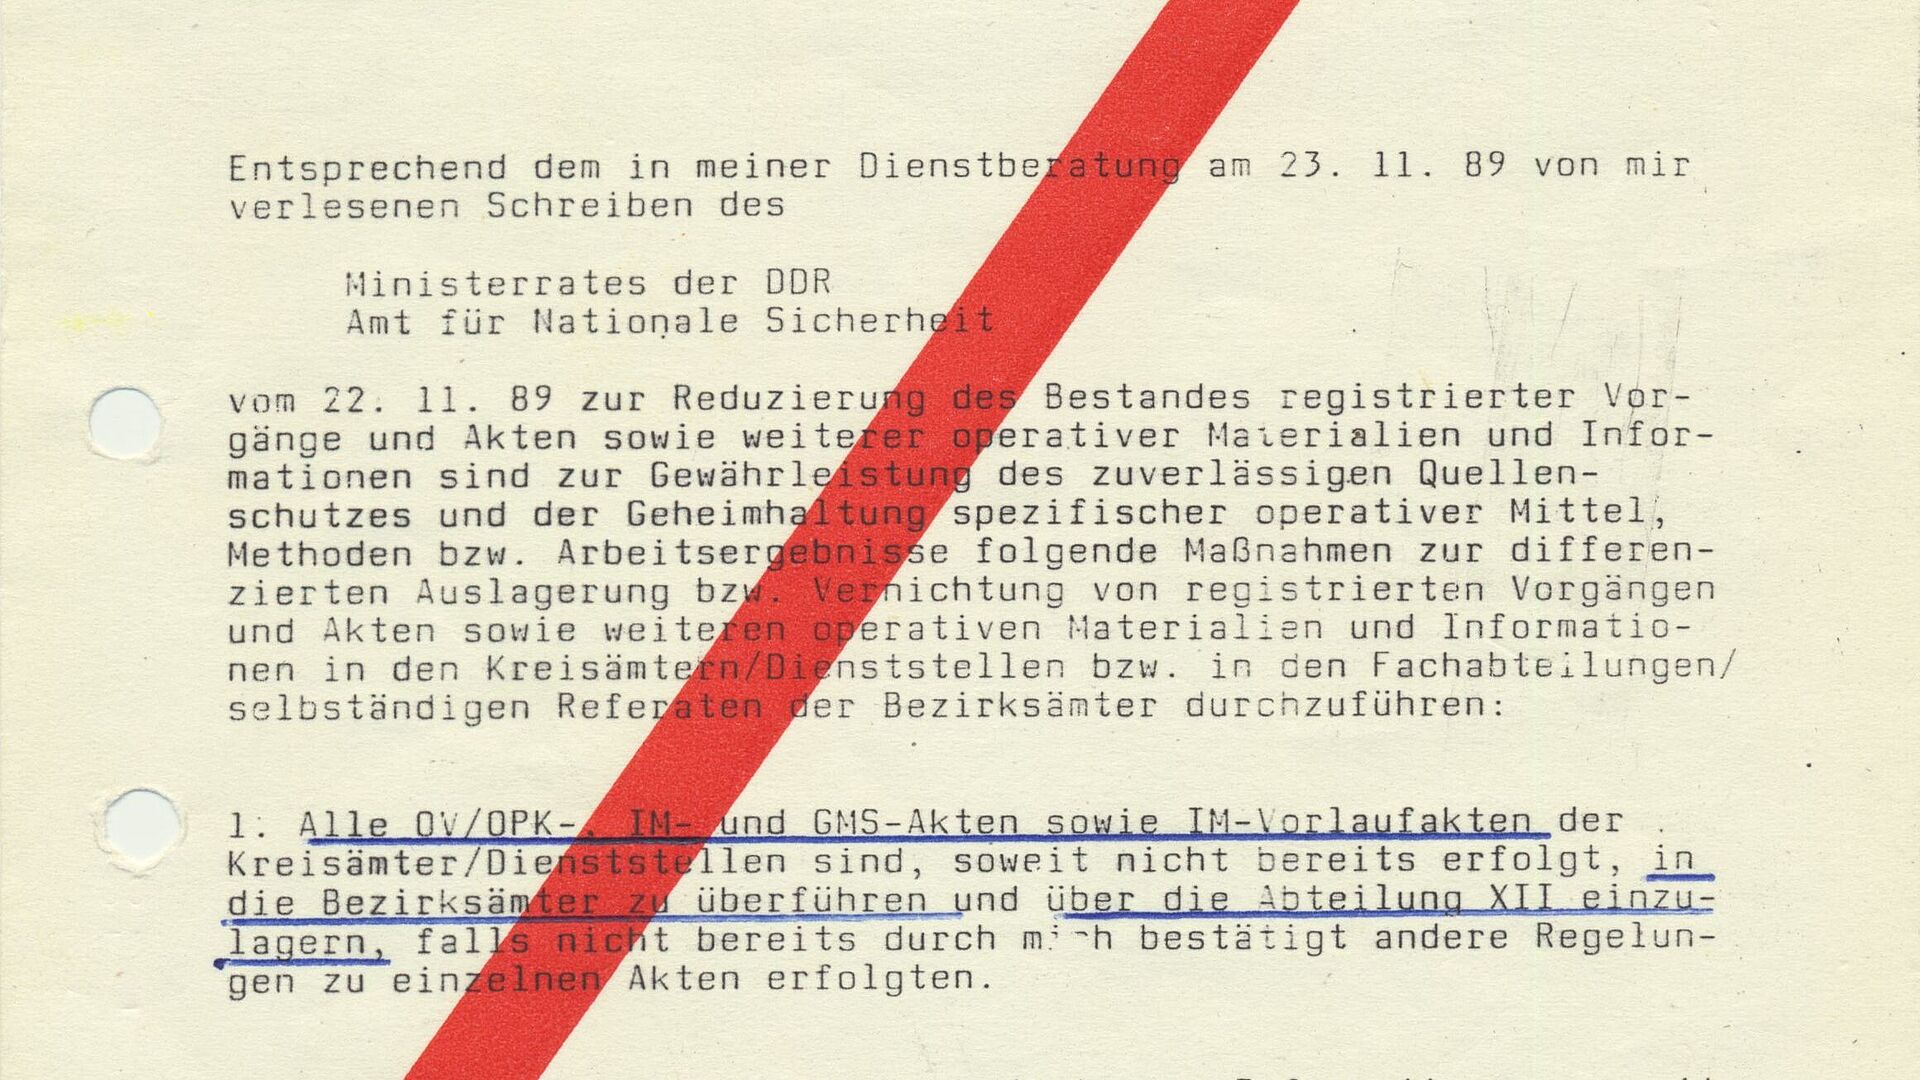 Maschinell beschriebener Zettel, auf dem von links unten nach rechts oben ein dicker roter Strich gedruckt ist. Absender ist der Leiter des Amts für Nationale Sicherheit, Bezirksamt Erfurt. 